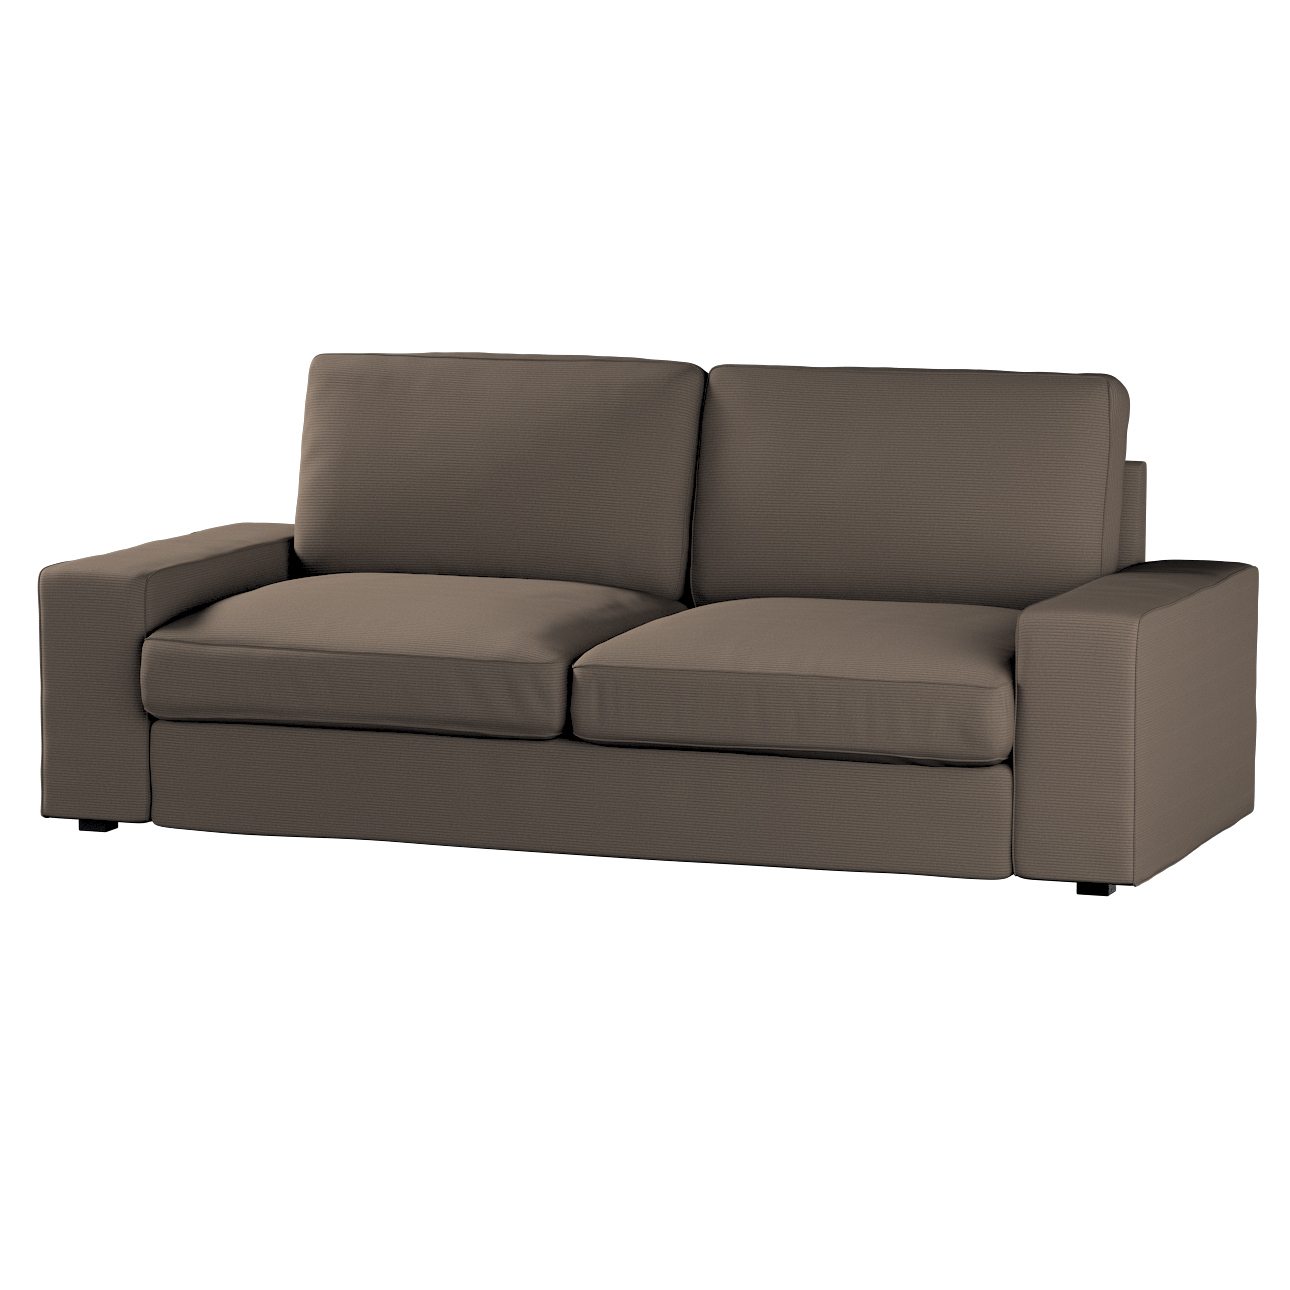 Bezug für Kivik 3-Sitzer Sofa, braun, Bezug für Sofa Kivik 3-Sitzer, Manche günstig online kaufen